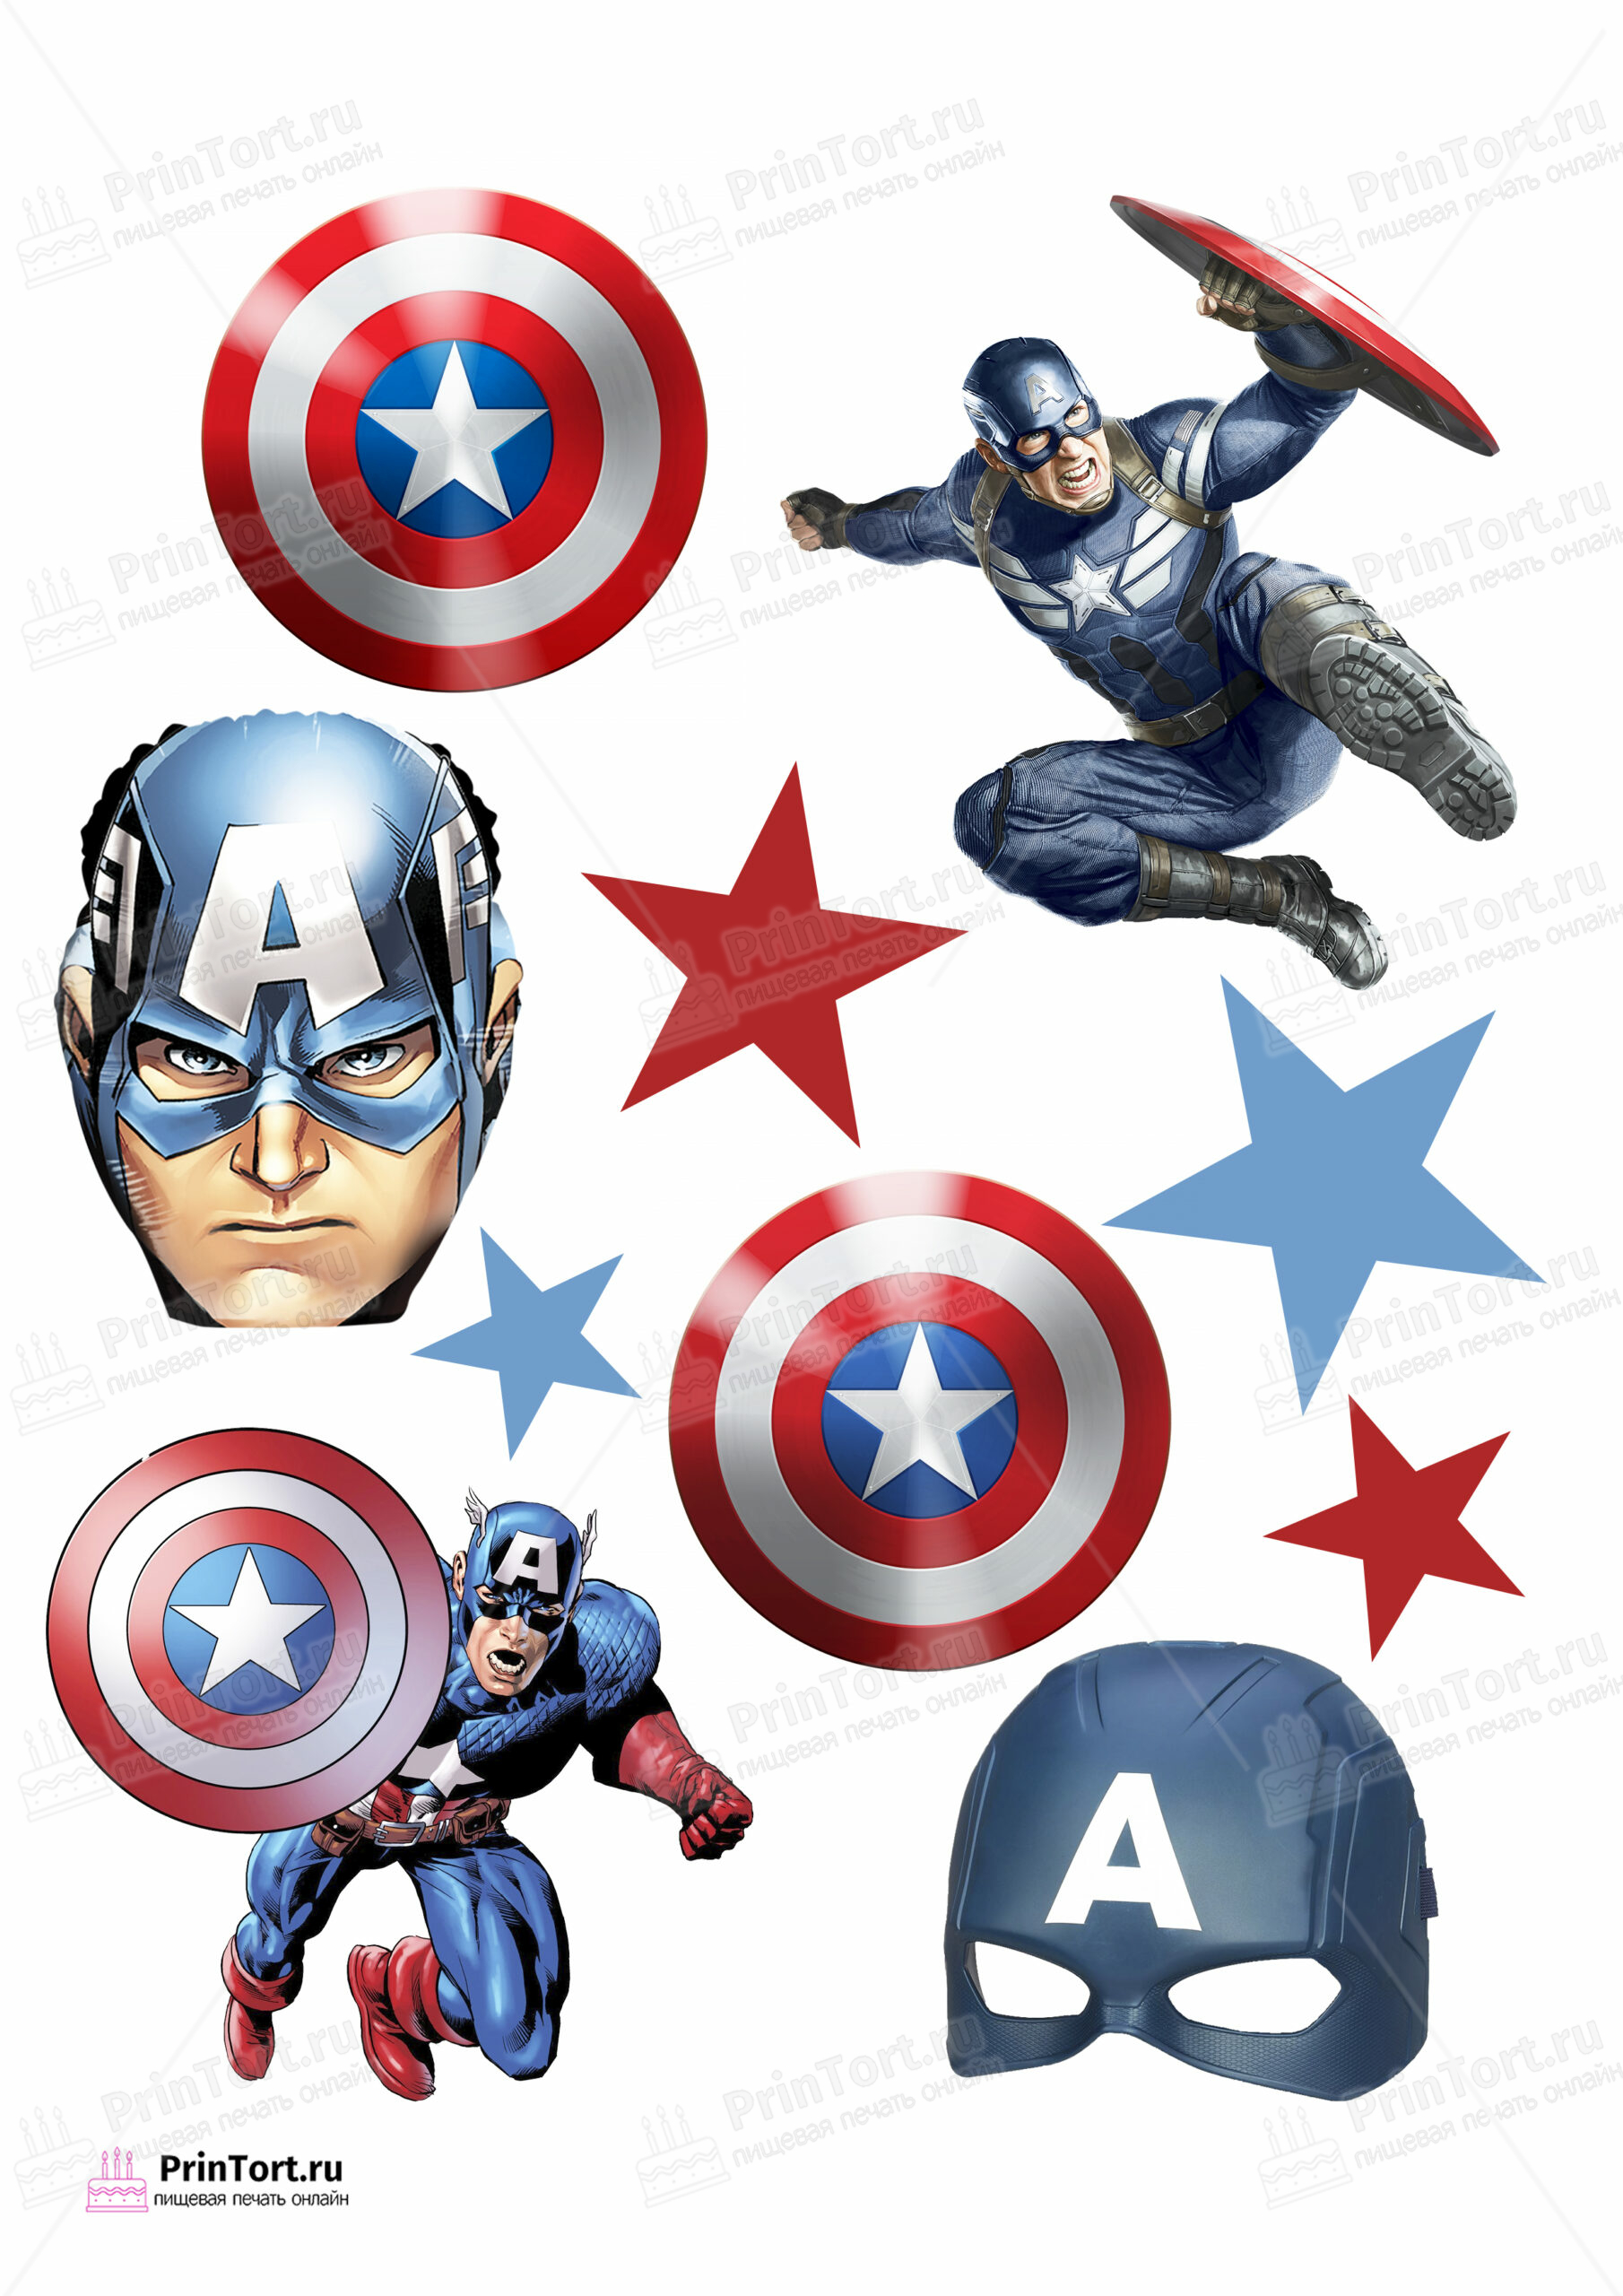 Картинка для торта Капитан Америка (Captain America) - PT103824 печать на  сахарной пищевой бумаге